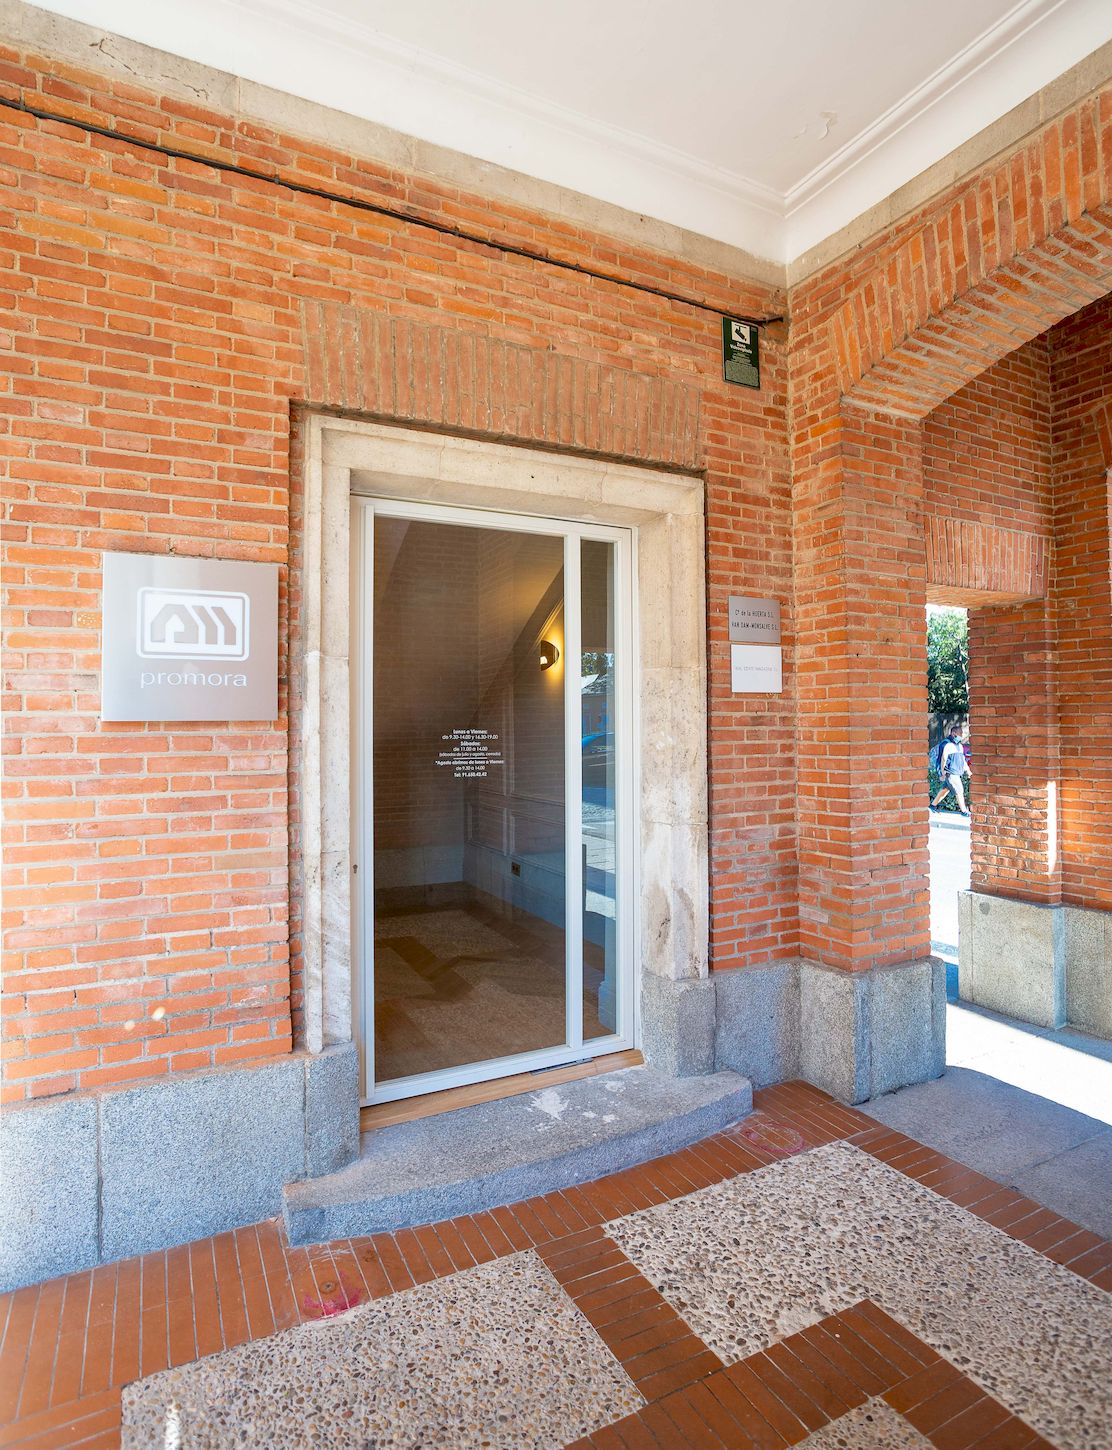 Reforma Integral de lujo en oficinas de Promora en la Moraleja Madrid co and co espacios